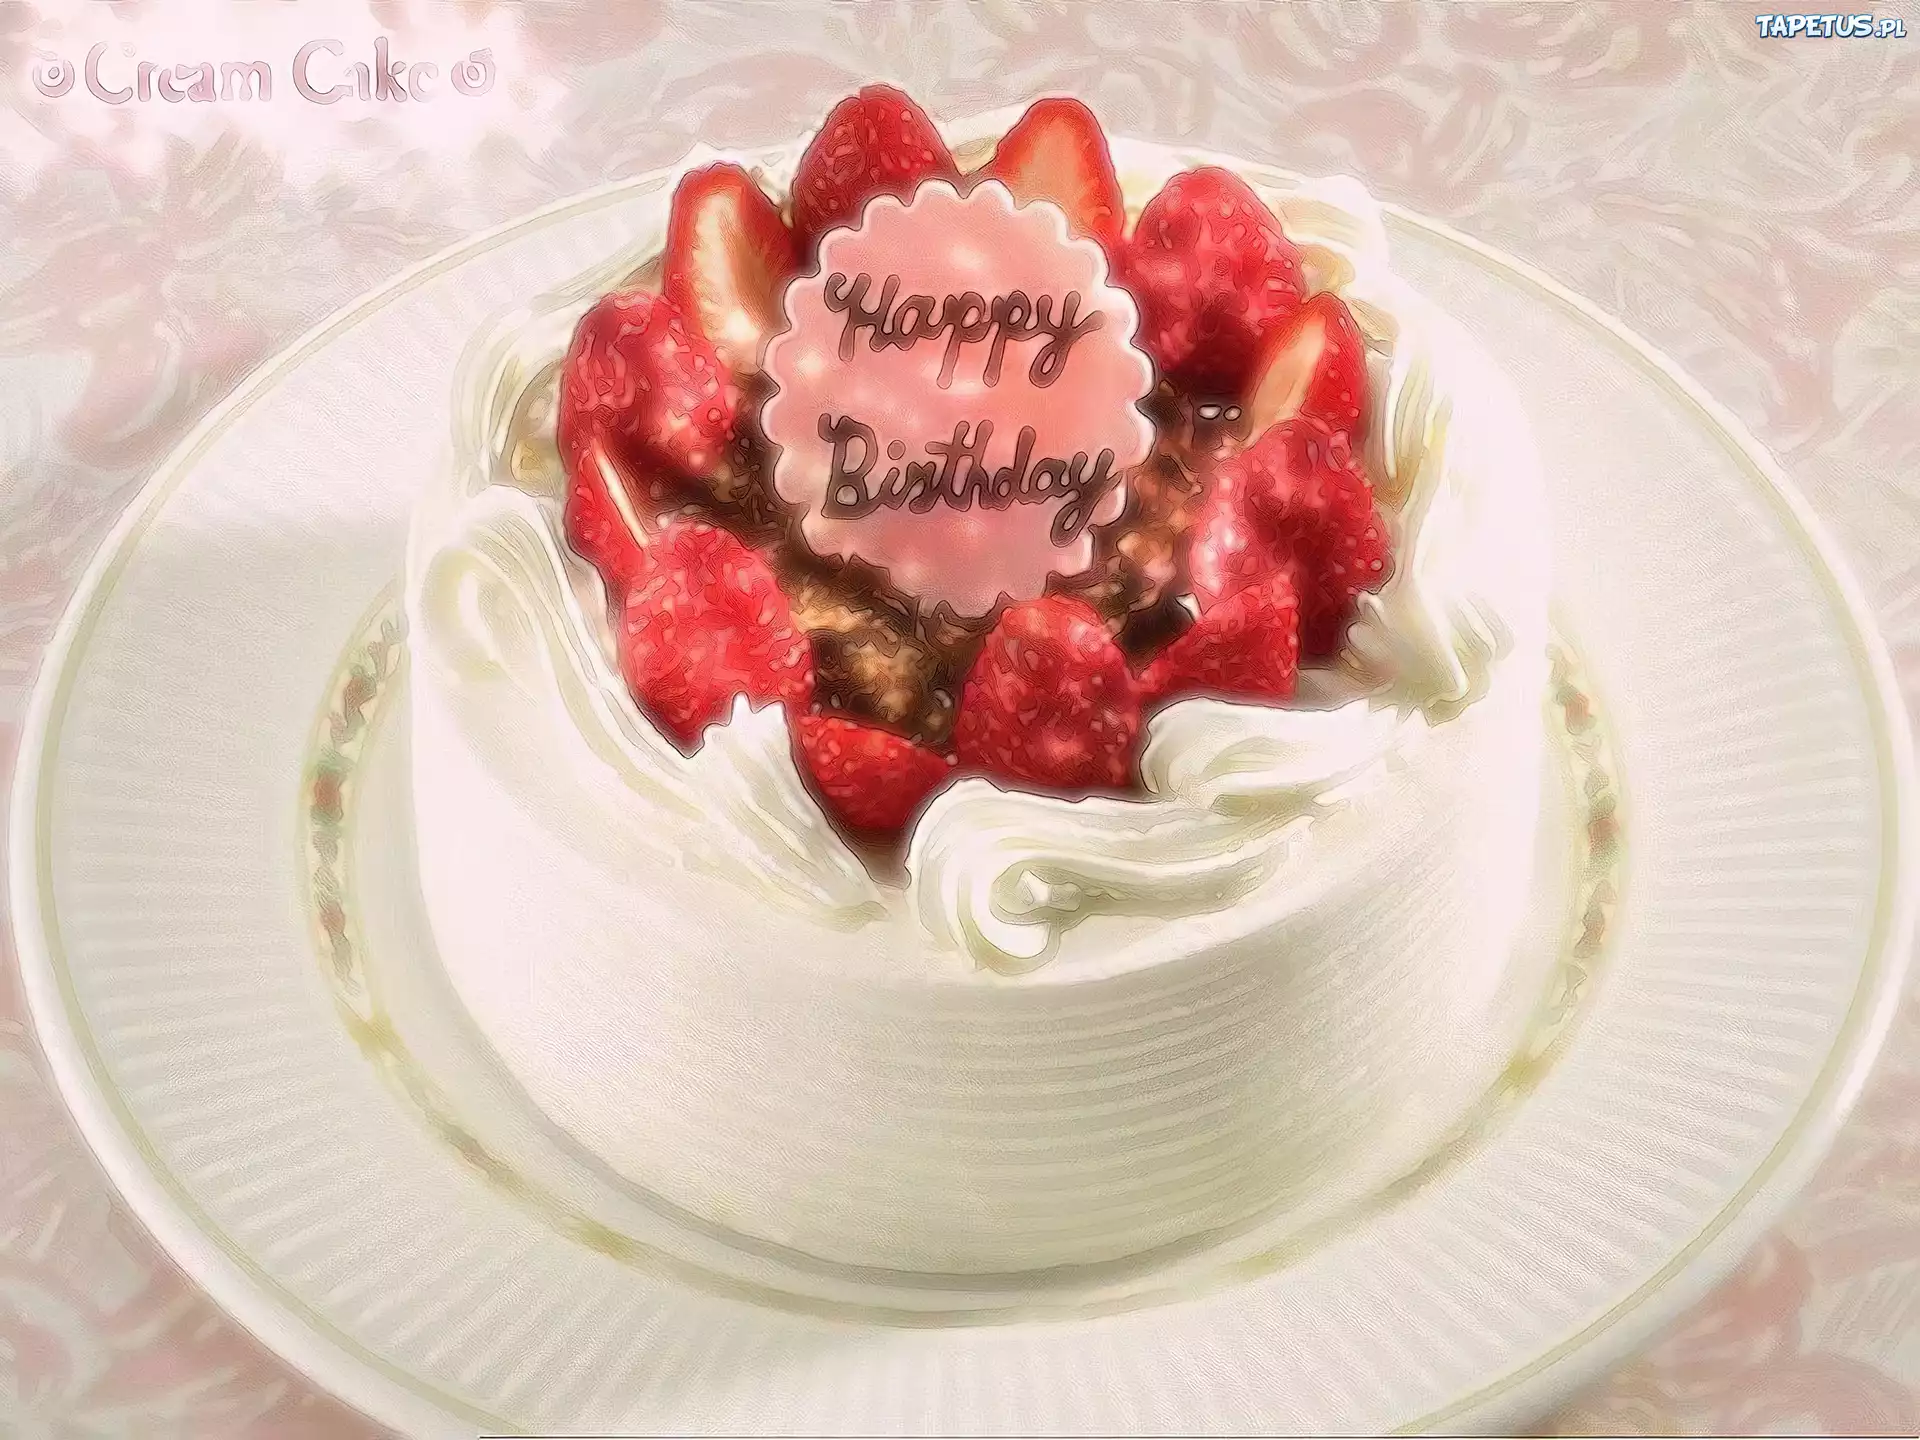 clipart tort urodzinowy - photo #47